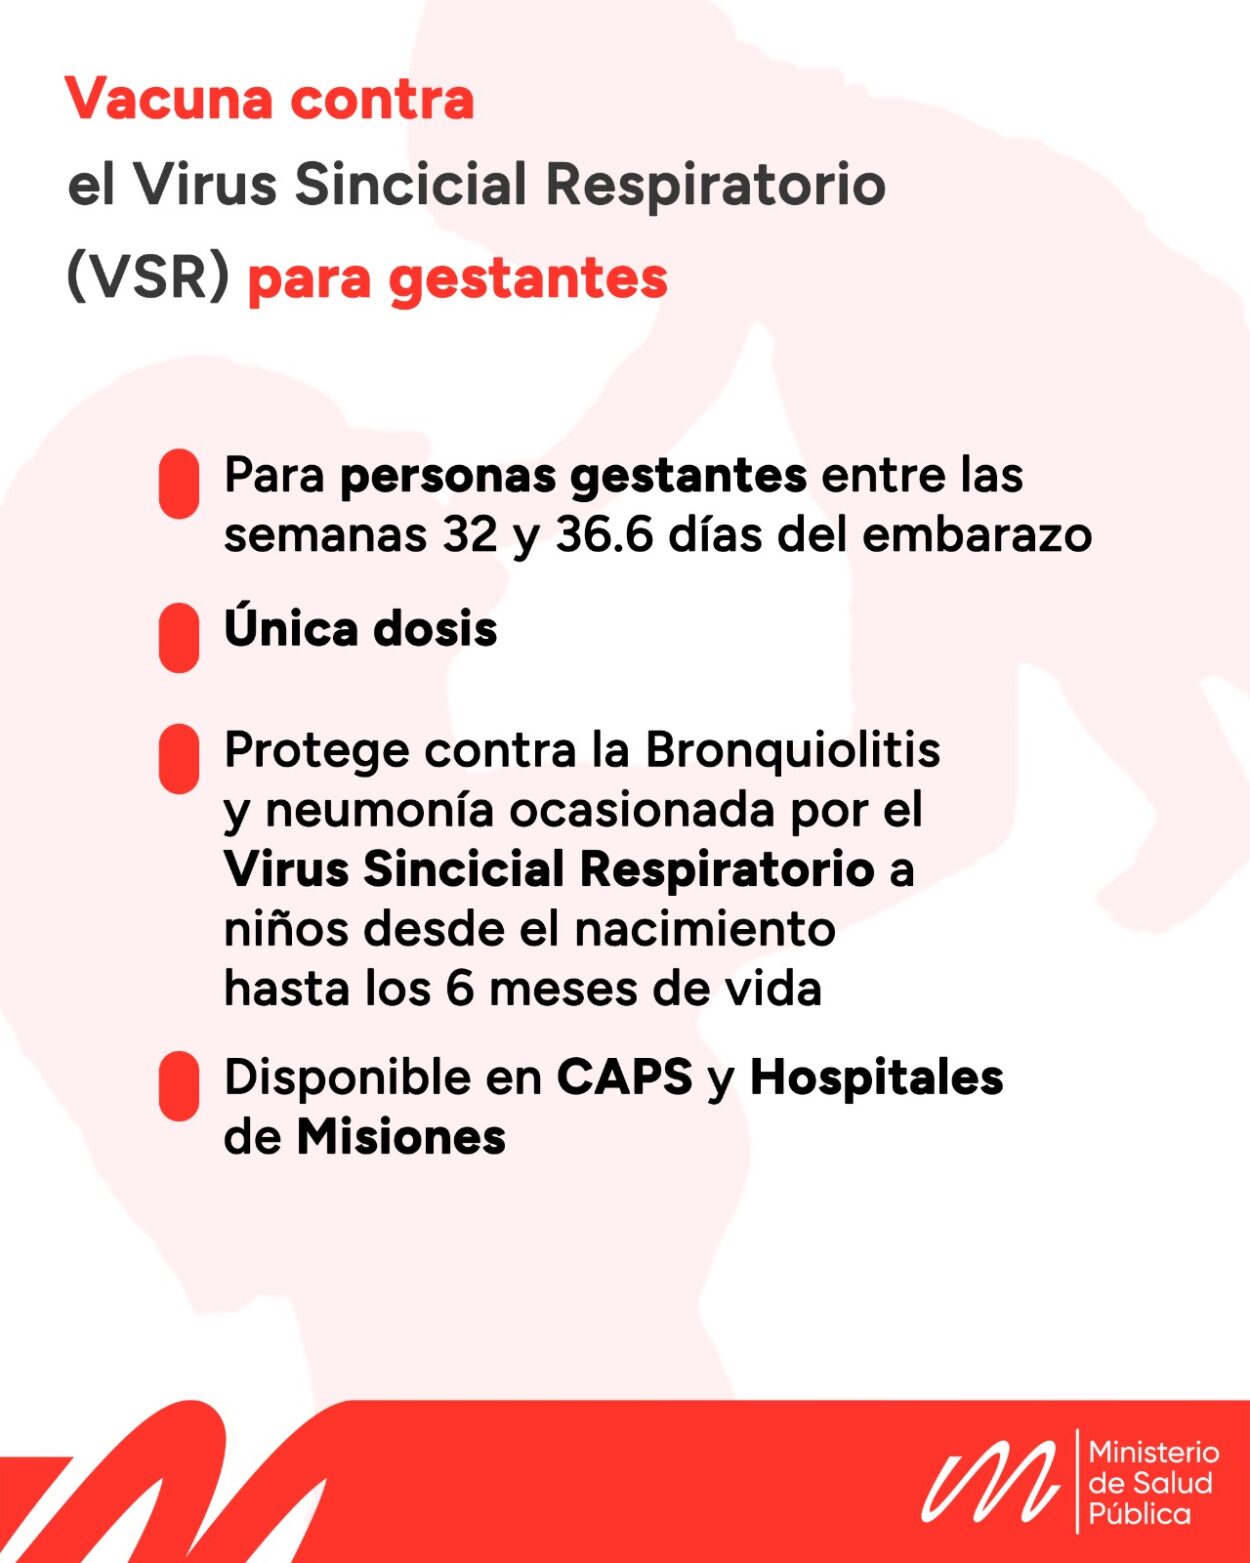 El próximo lunes arrancará la vacunación contra el Virus Sincicial Respiratorio para personas gestantes en Misiones imagen-31